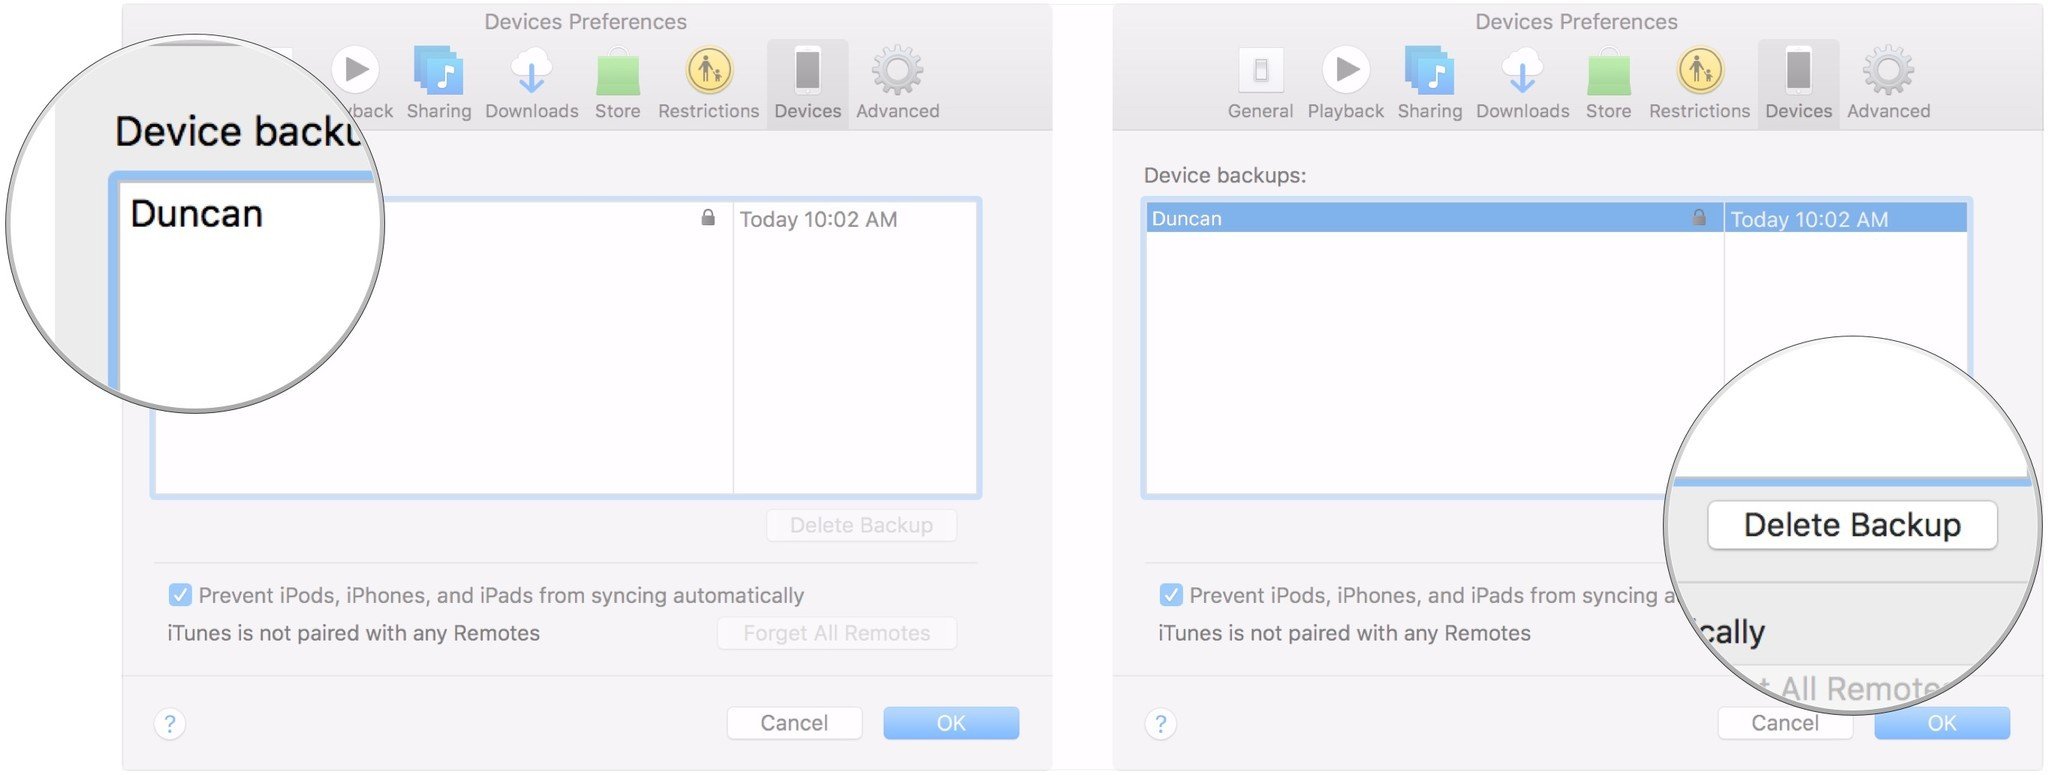 Удалить резервную копию iPhone в macOS Mojave показывает, как щелкнуть резервную копию, которую вы хотите удалить, и щелкнуть Удалить резервную копию